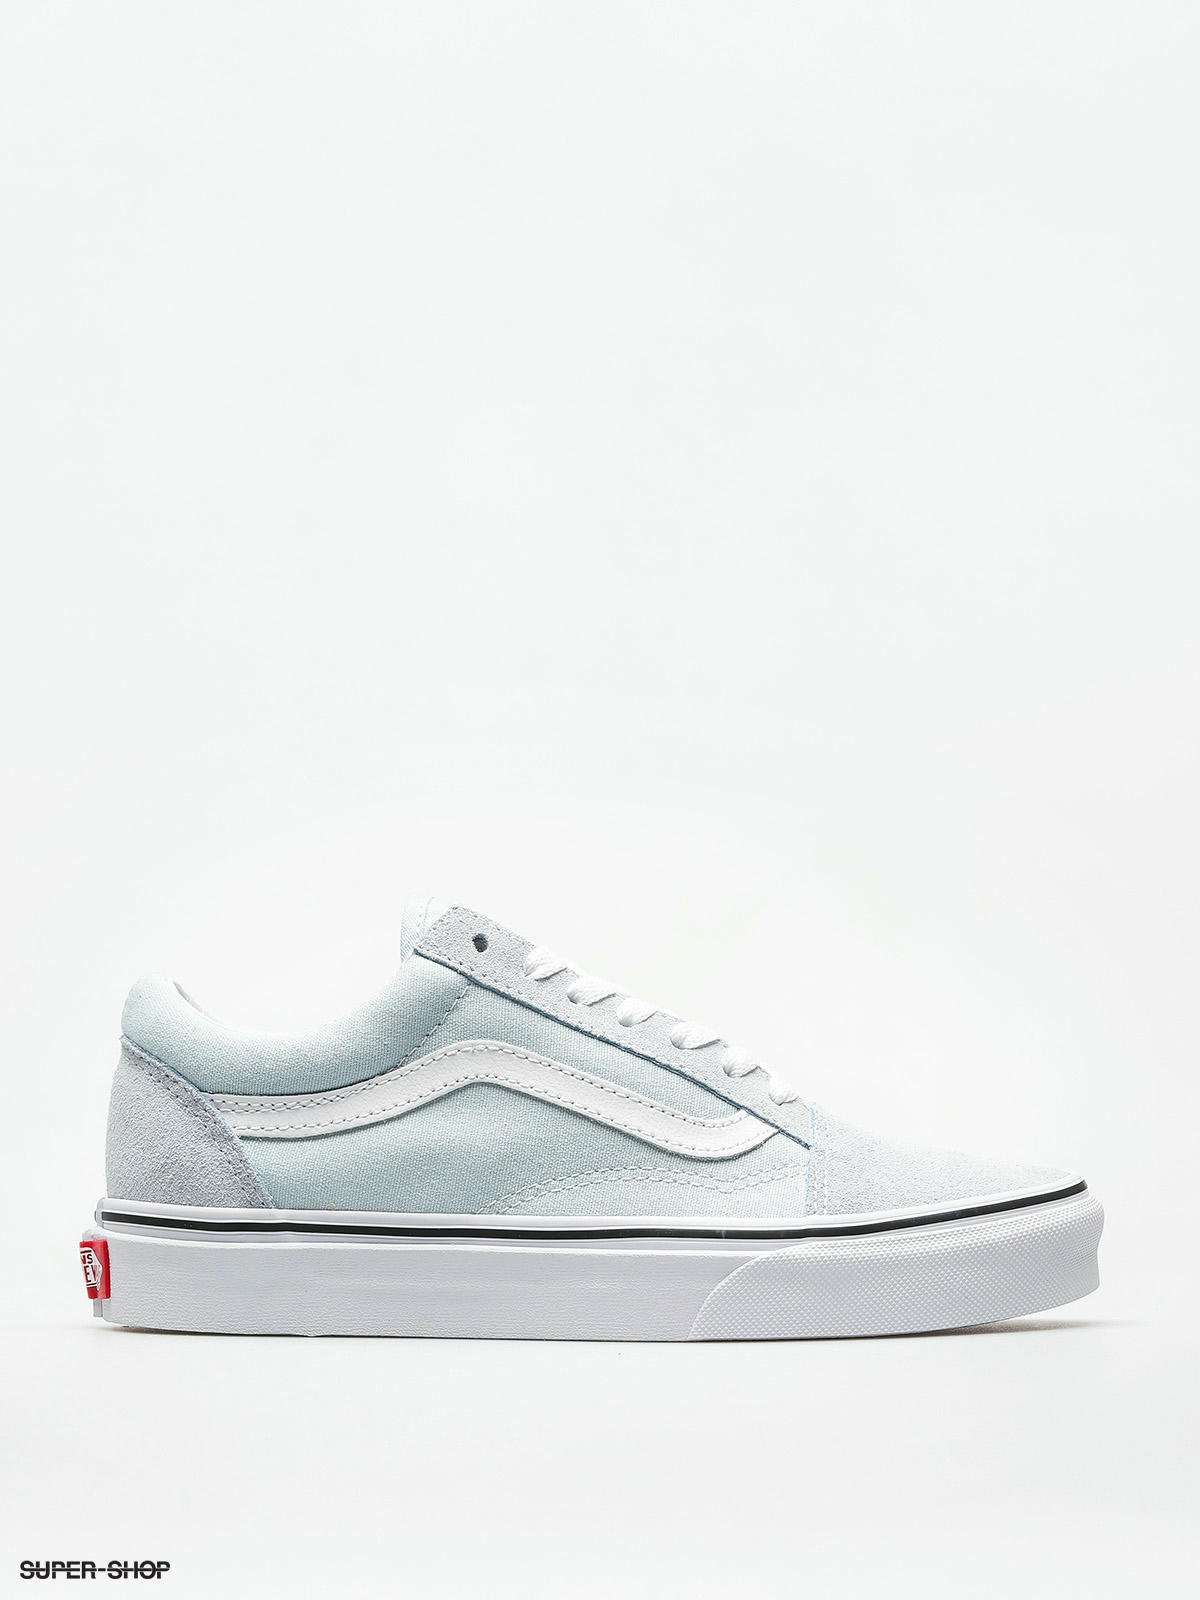 Vans Shoes Old Skool (baby blue/true white)